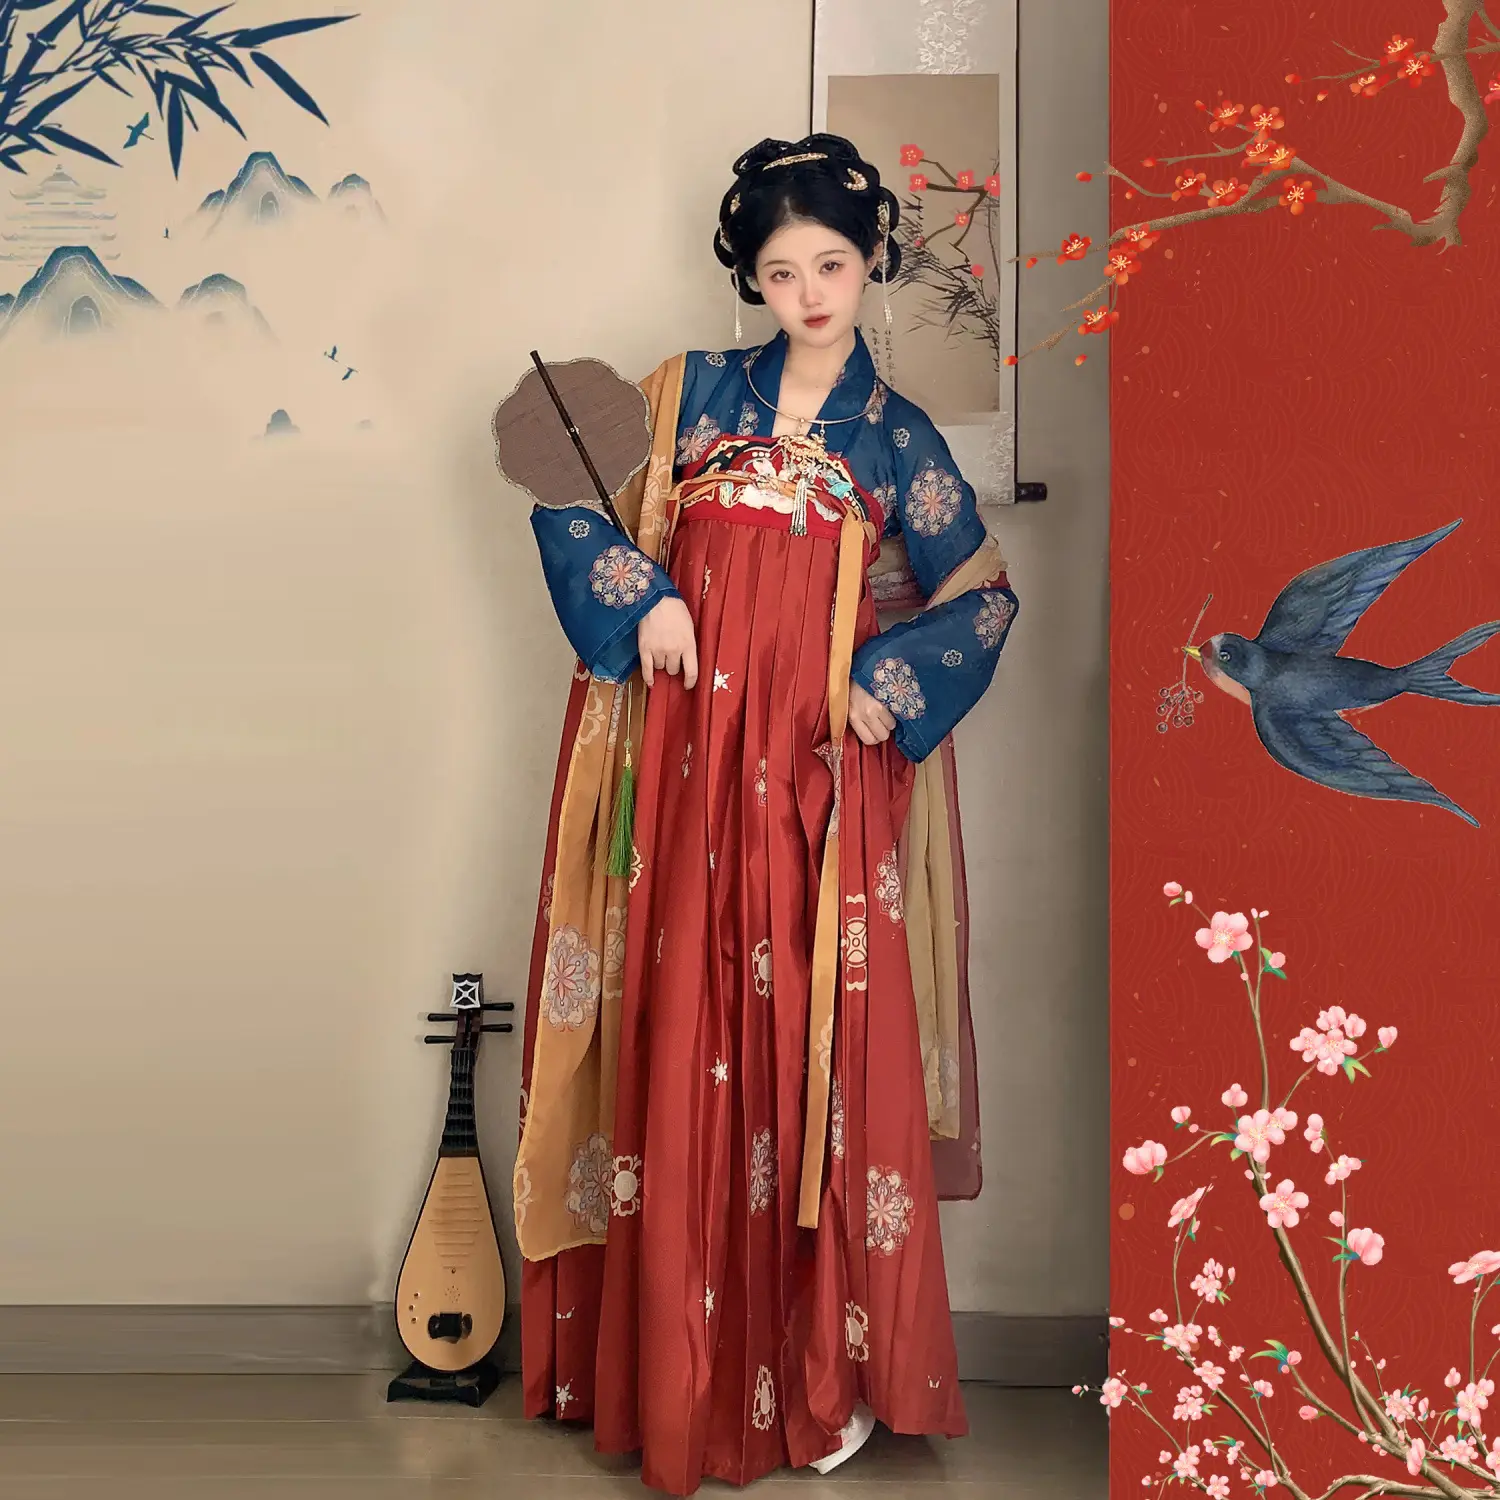 النساء Hanfu بيع بالجملة جميلة الجاهزة الحديثة تعديل قطعة واحدة الصينية التقليدية النساء هانفو اللباس للبيع ملابس نسائية